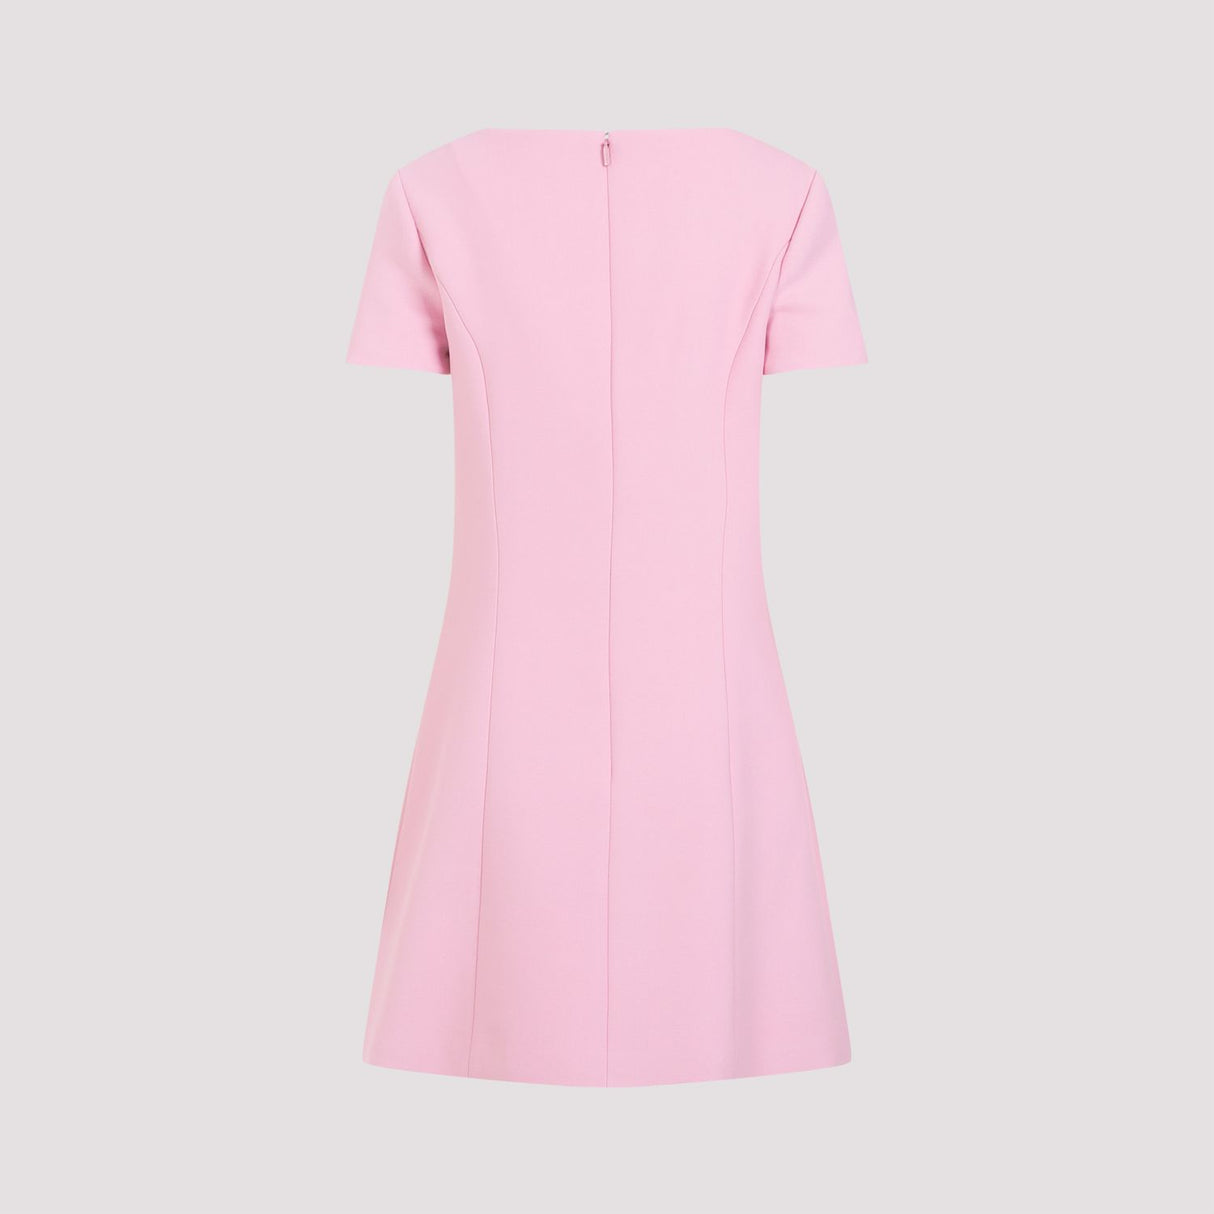 Đầm cổ áo ngắn sang trọng màu hồng & tím cho phái đẹp - Bộ sưu tập SS24